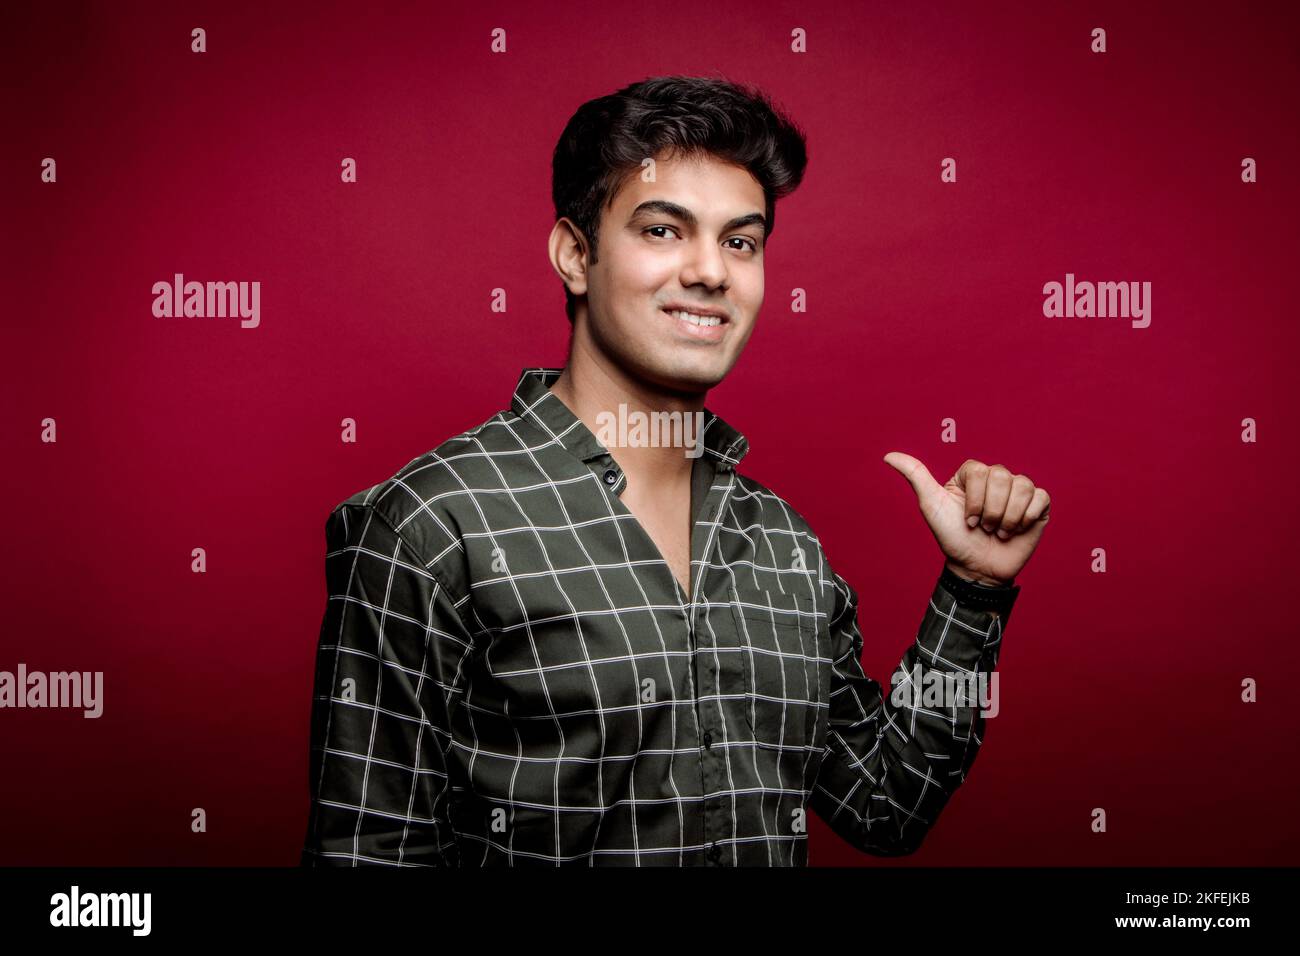 Porträt eines lächelnden jungen indischen Mannes mit kariertem Hemd, der mit dem Daumen auf sich selbst zeigt und vor rotem Hintergrund auf die Kamera blickt Stockfoto